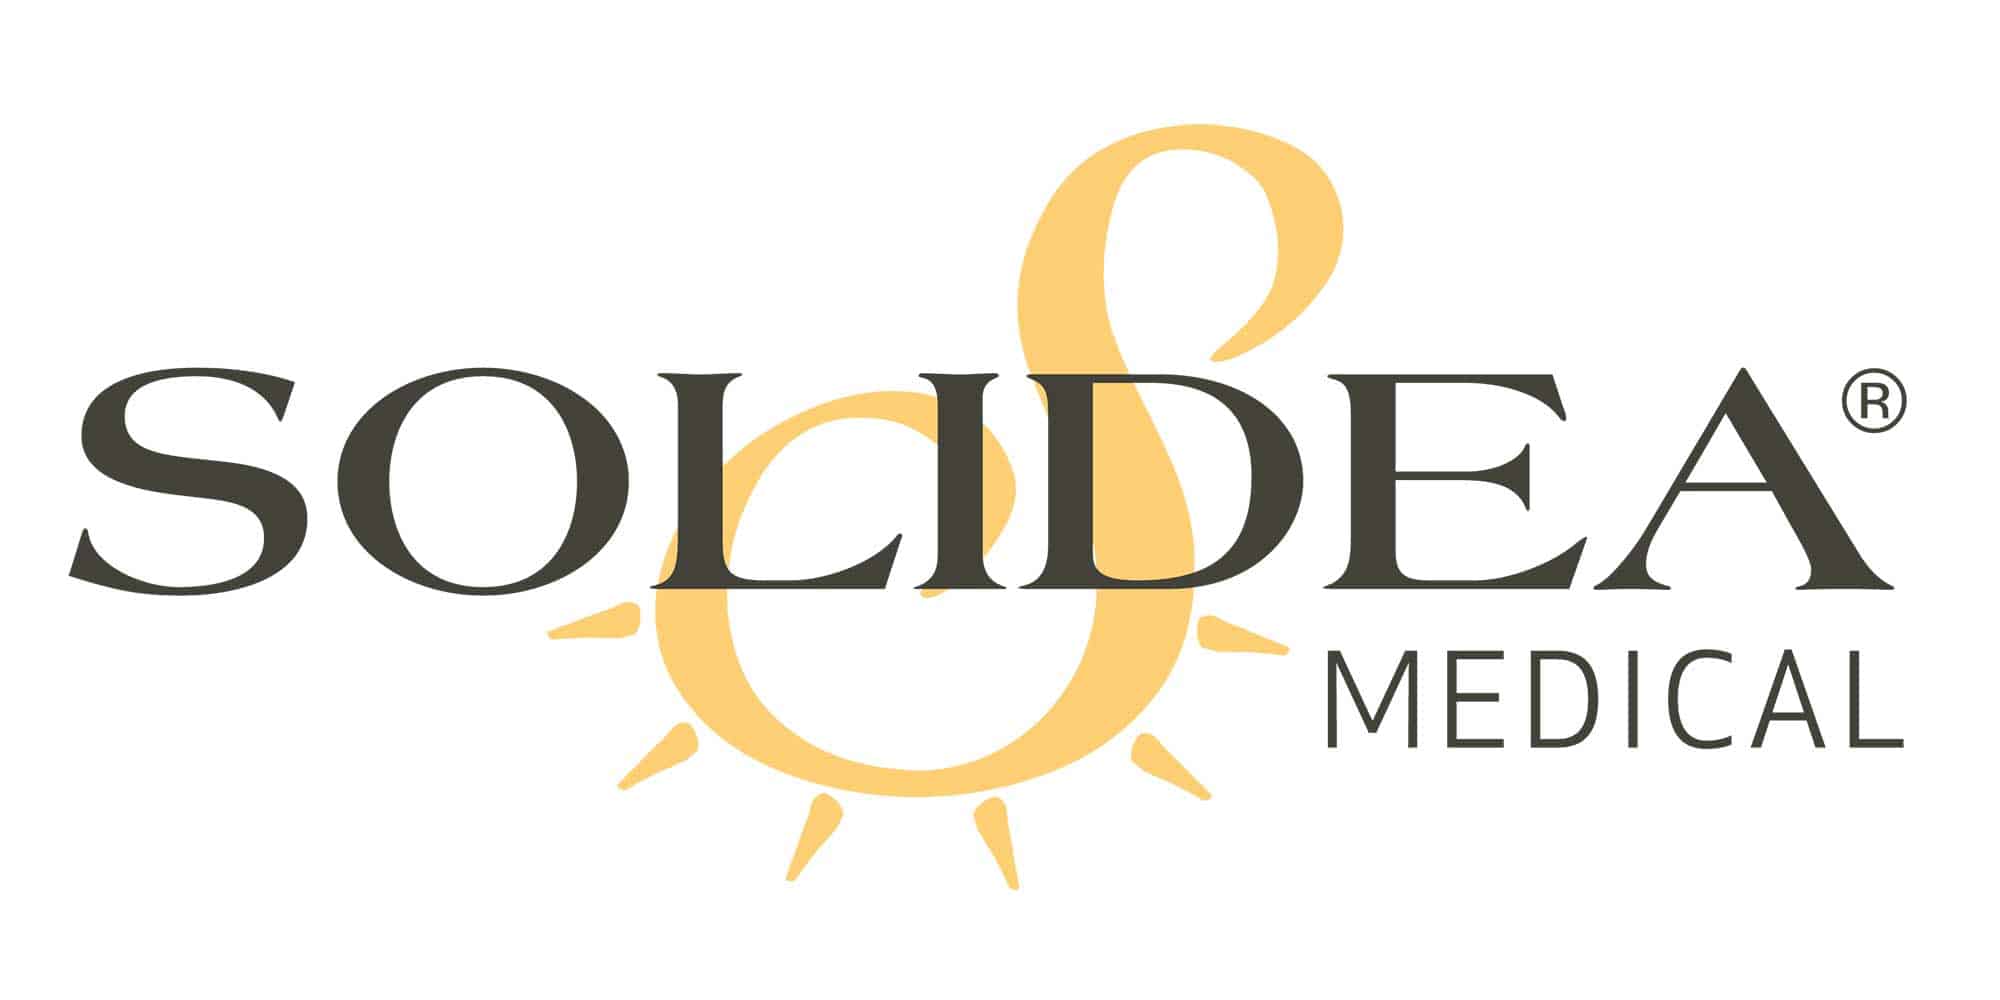 Solidea_Medical_Logo